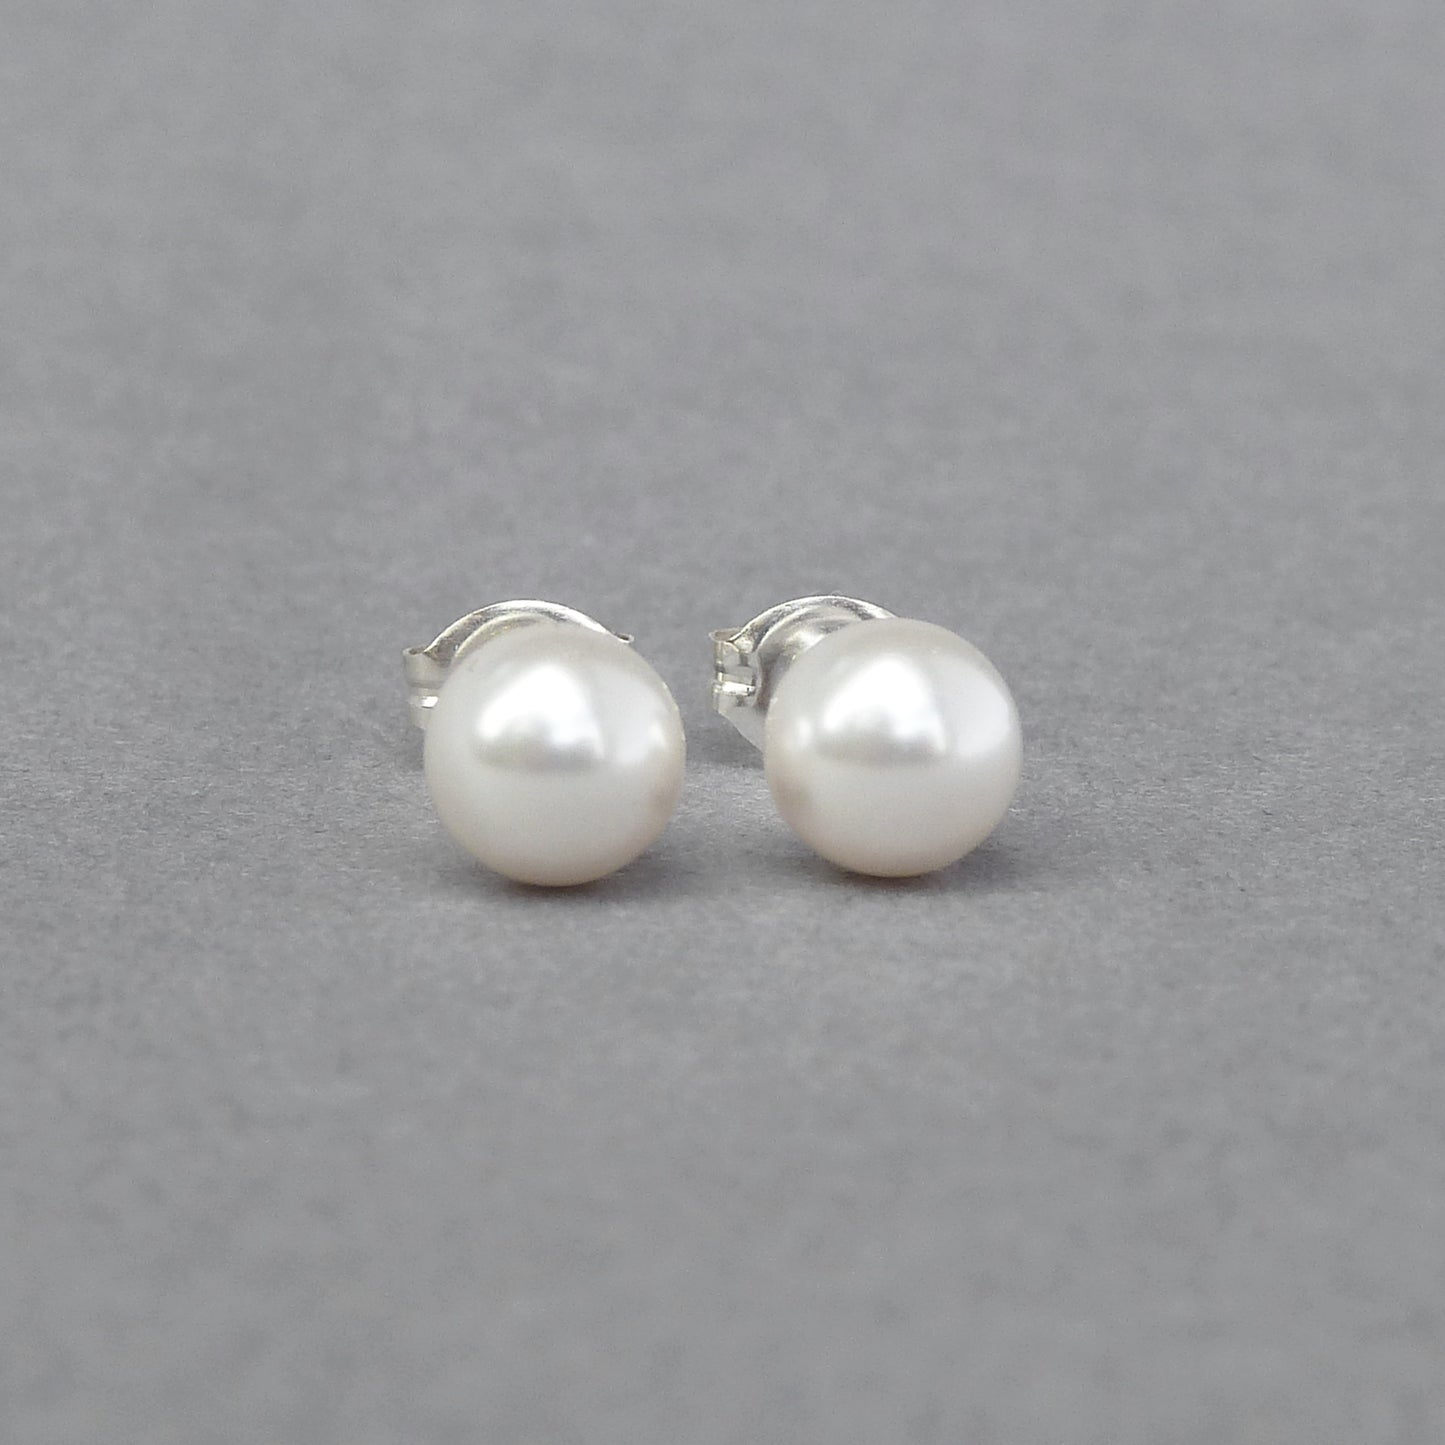 6mm white pearl stud earrings